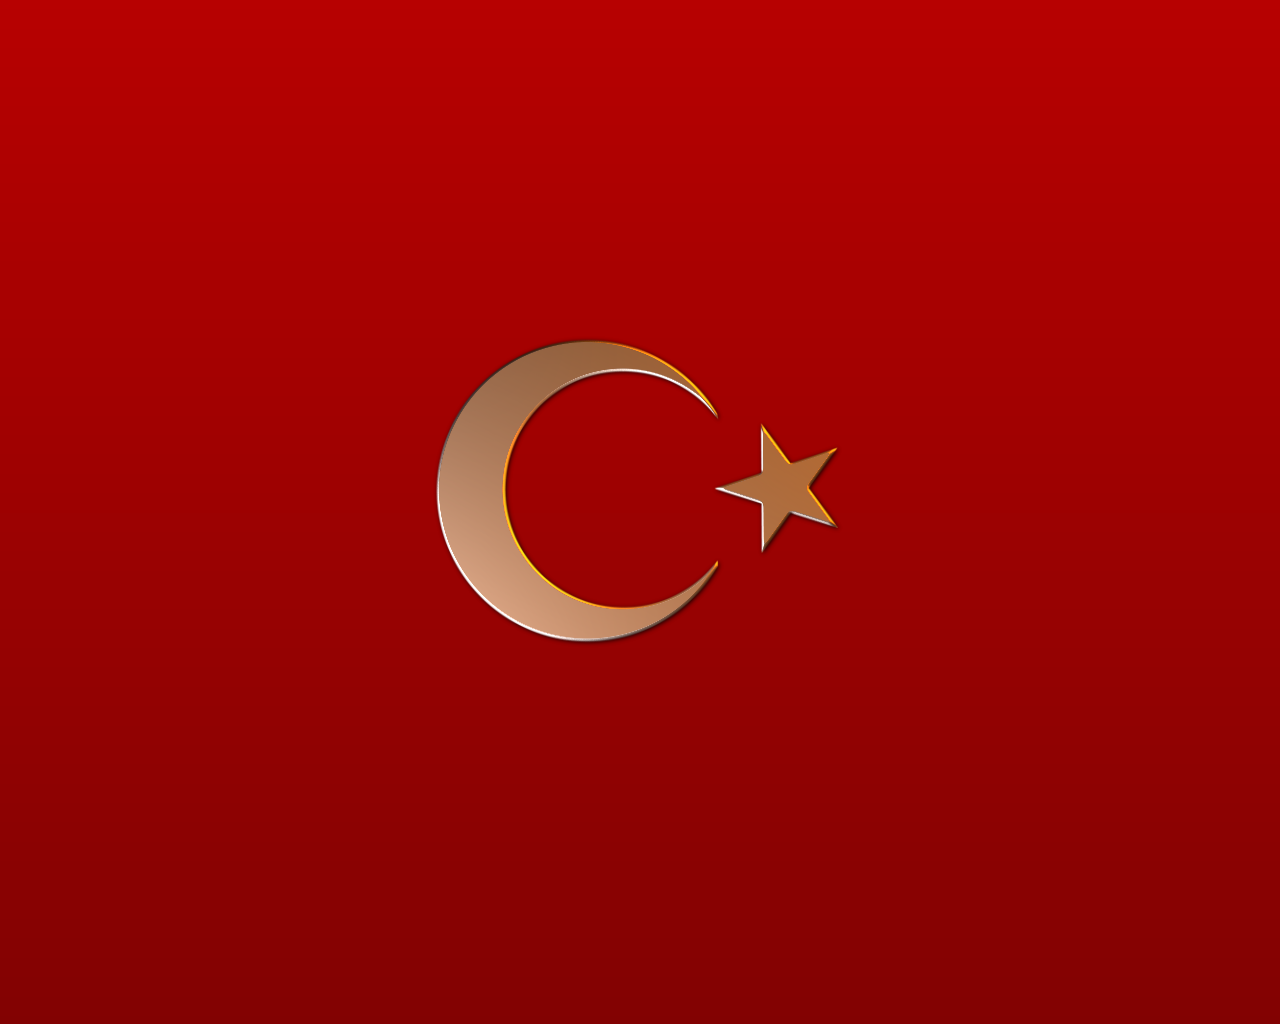 türk wallpaper,red,logo,font,flag,circle